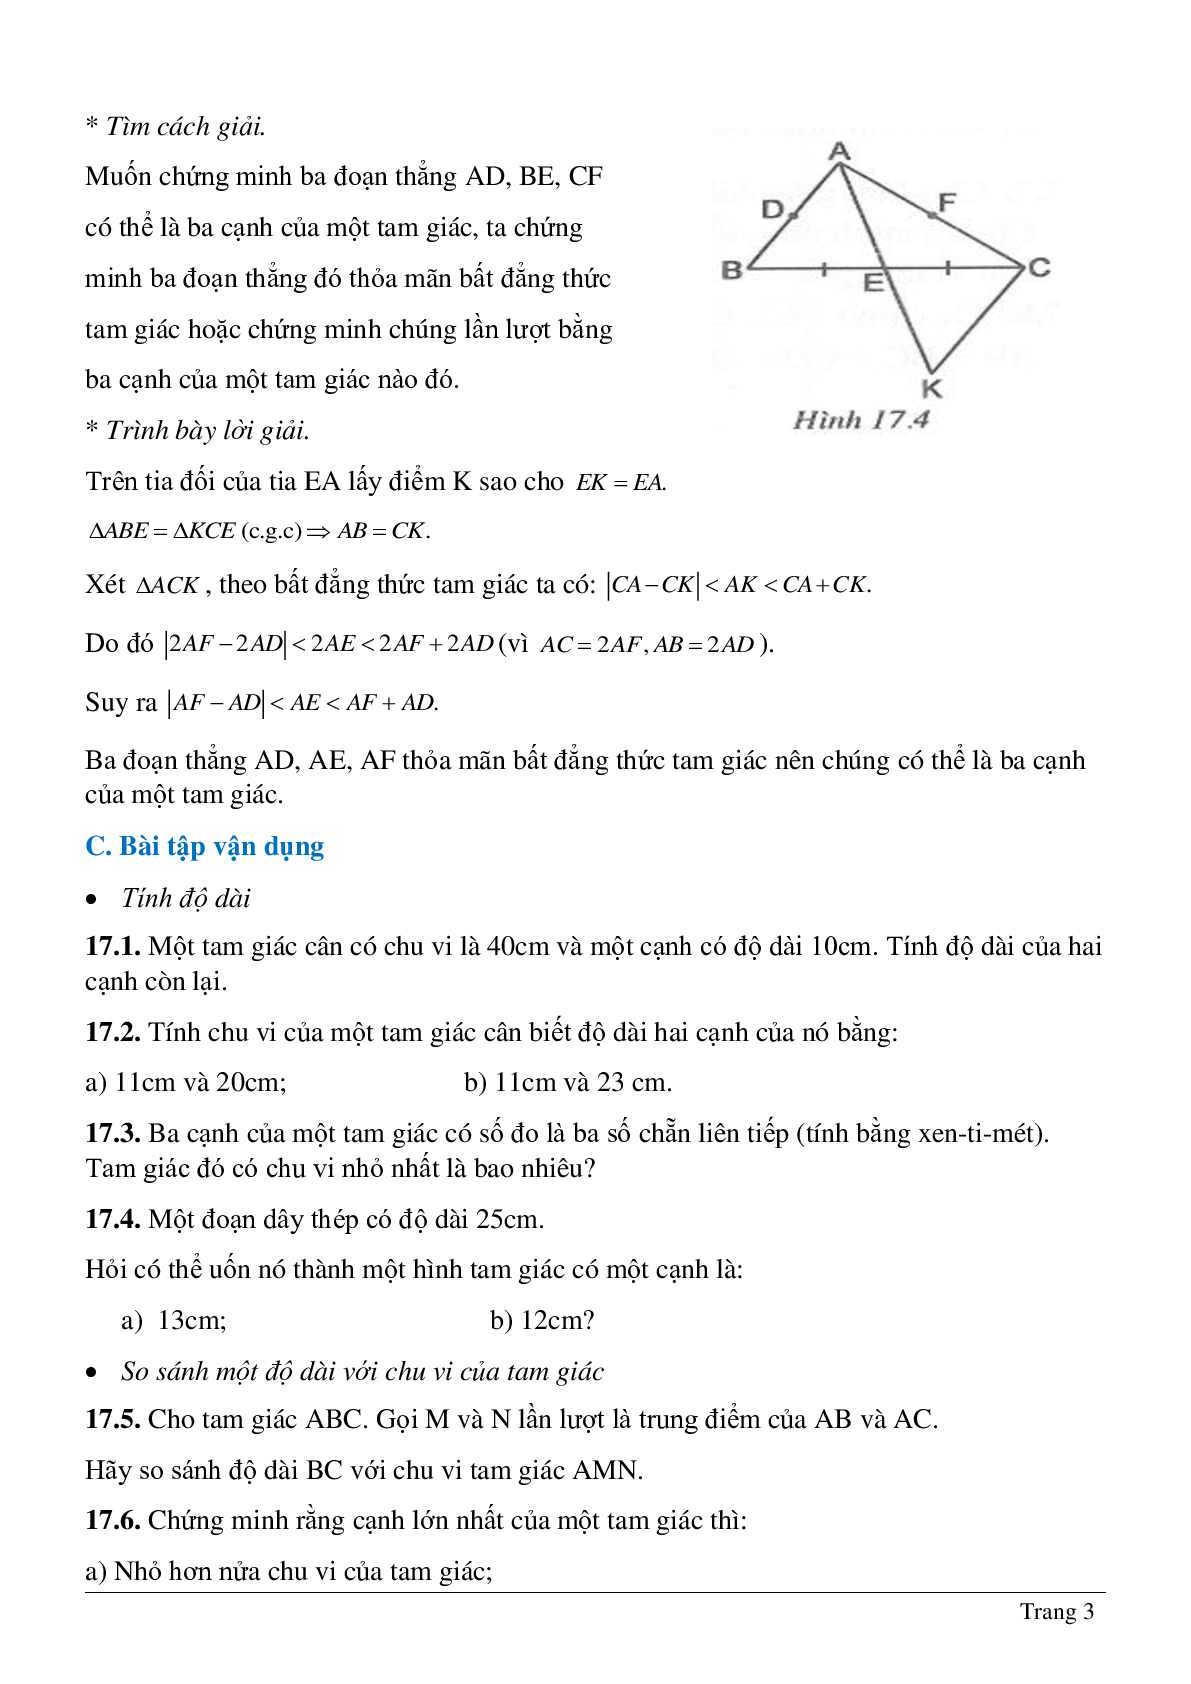 Lý thuyết và hệ thống bài tập tự luyện về Quan hệ giữa ba cạnh của một tam giác hay nhất (trang 3)